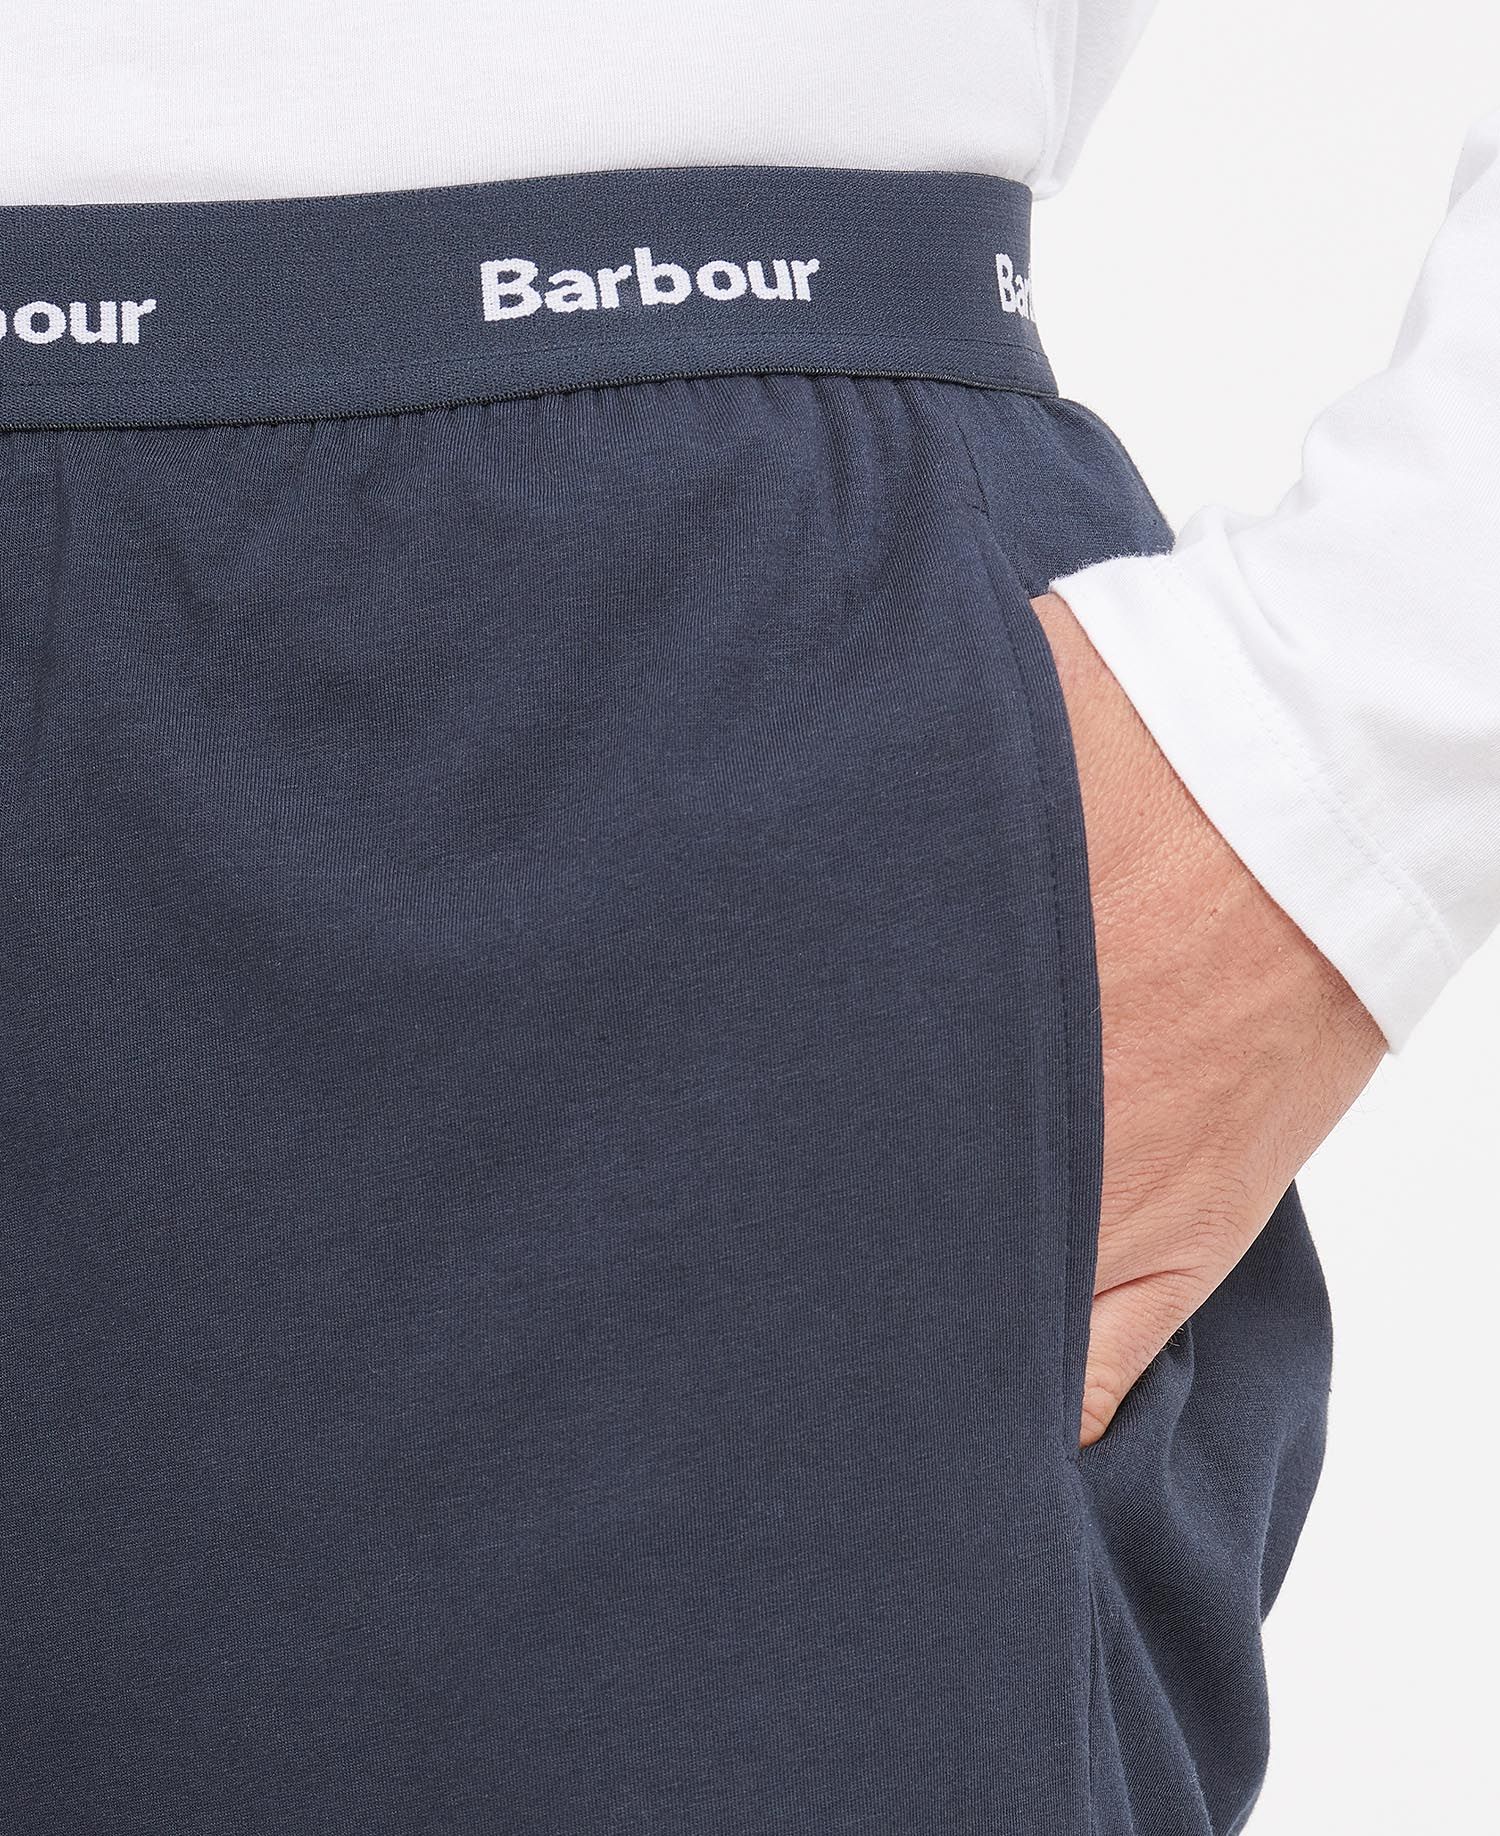 Barbour Men's Abbott Short - Navy